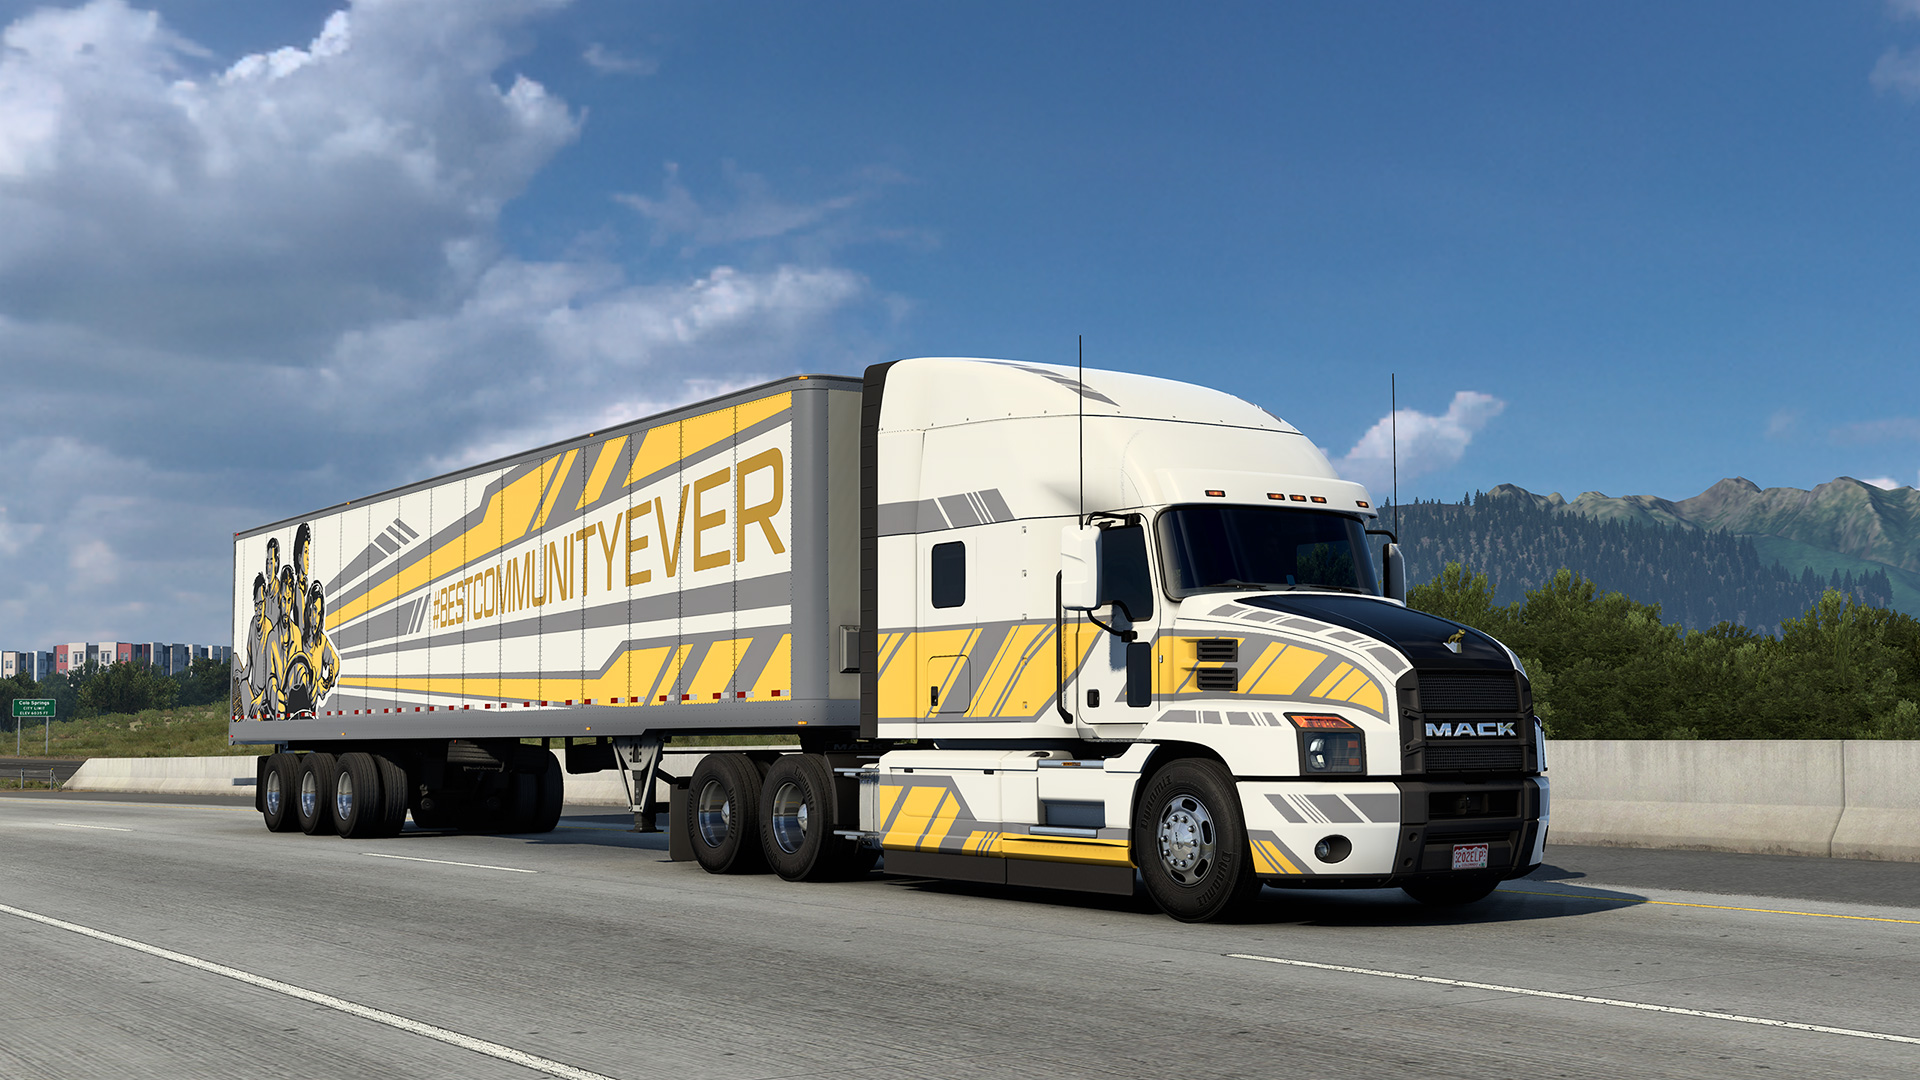 Грузовики в Португалии. #BESTCOMMUNITYEVER. Грузовики Португалия на поднятых. Truck and Logistics Simulator. Етс атс